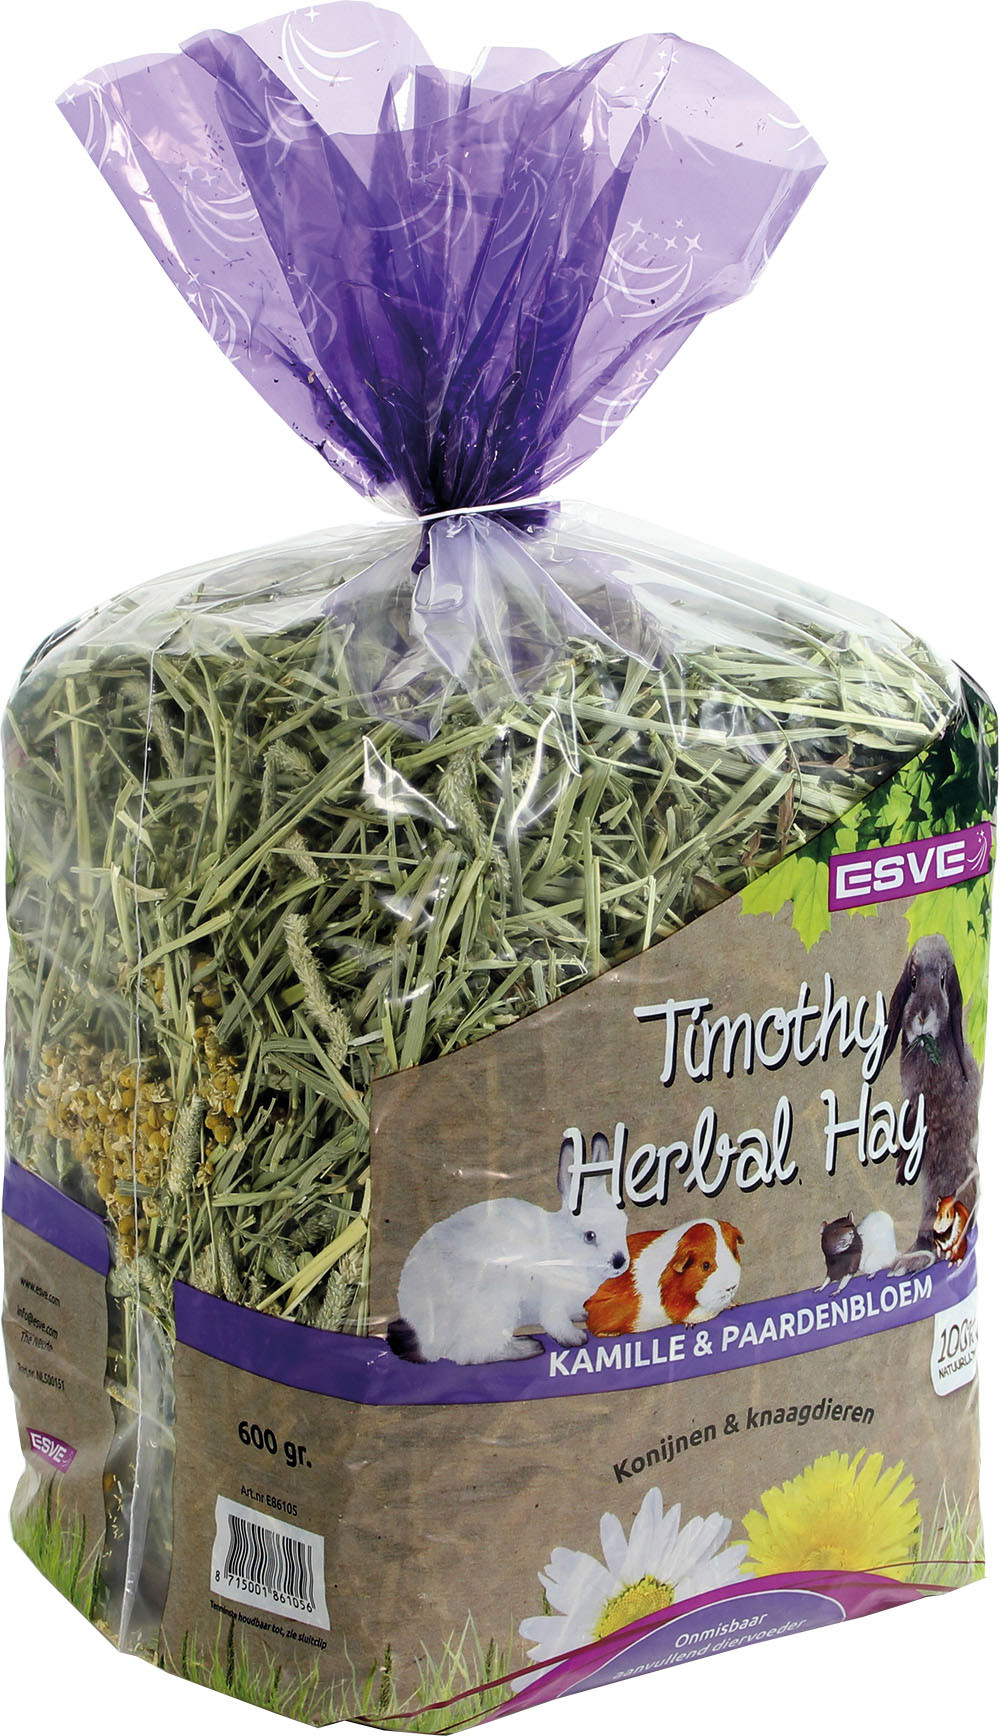 ESVE Timothy Herbal Hay kamille en paardenbloem 600 gr